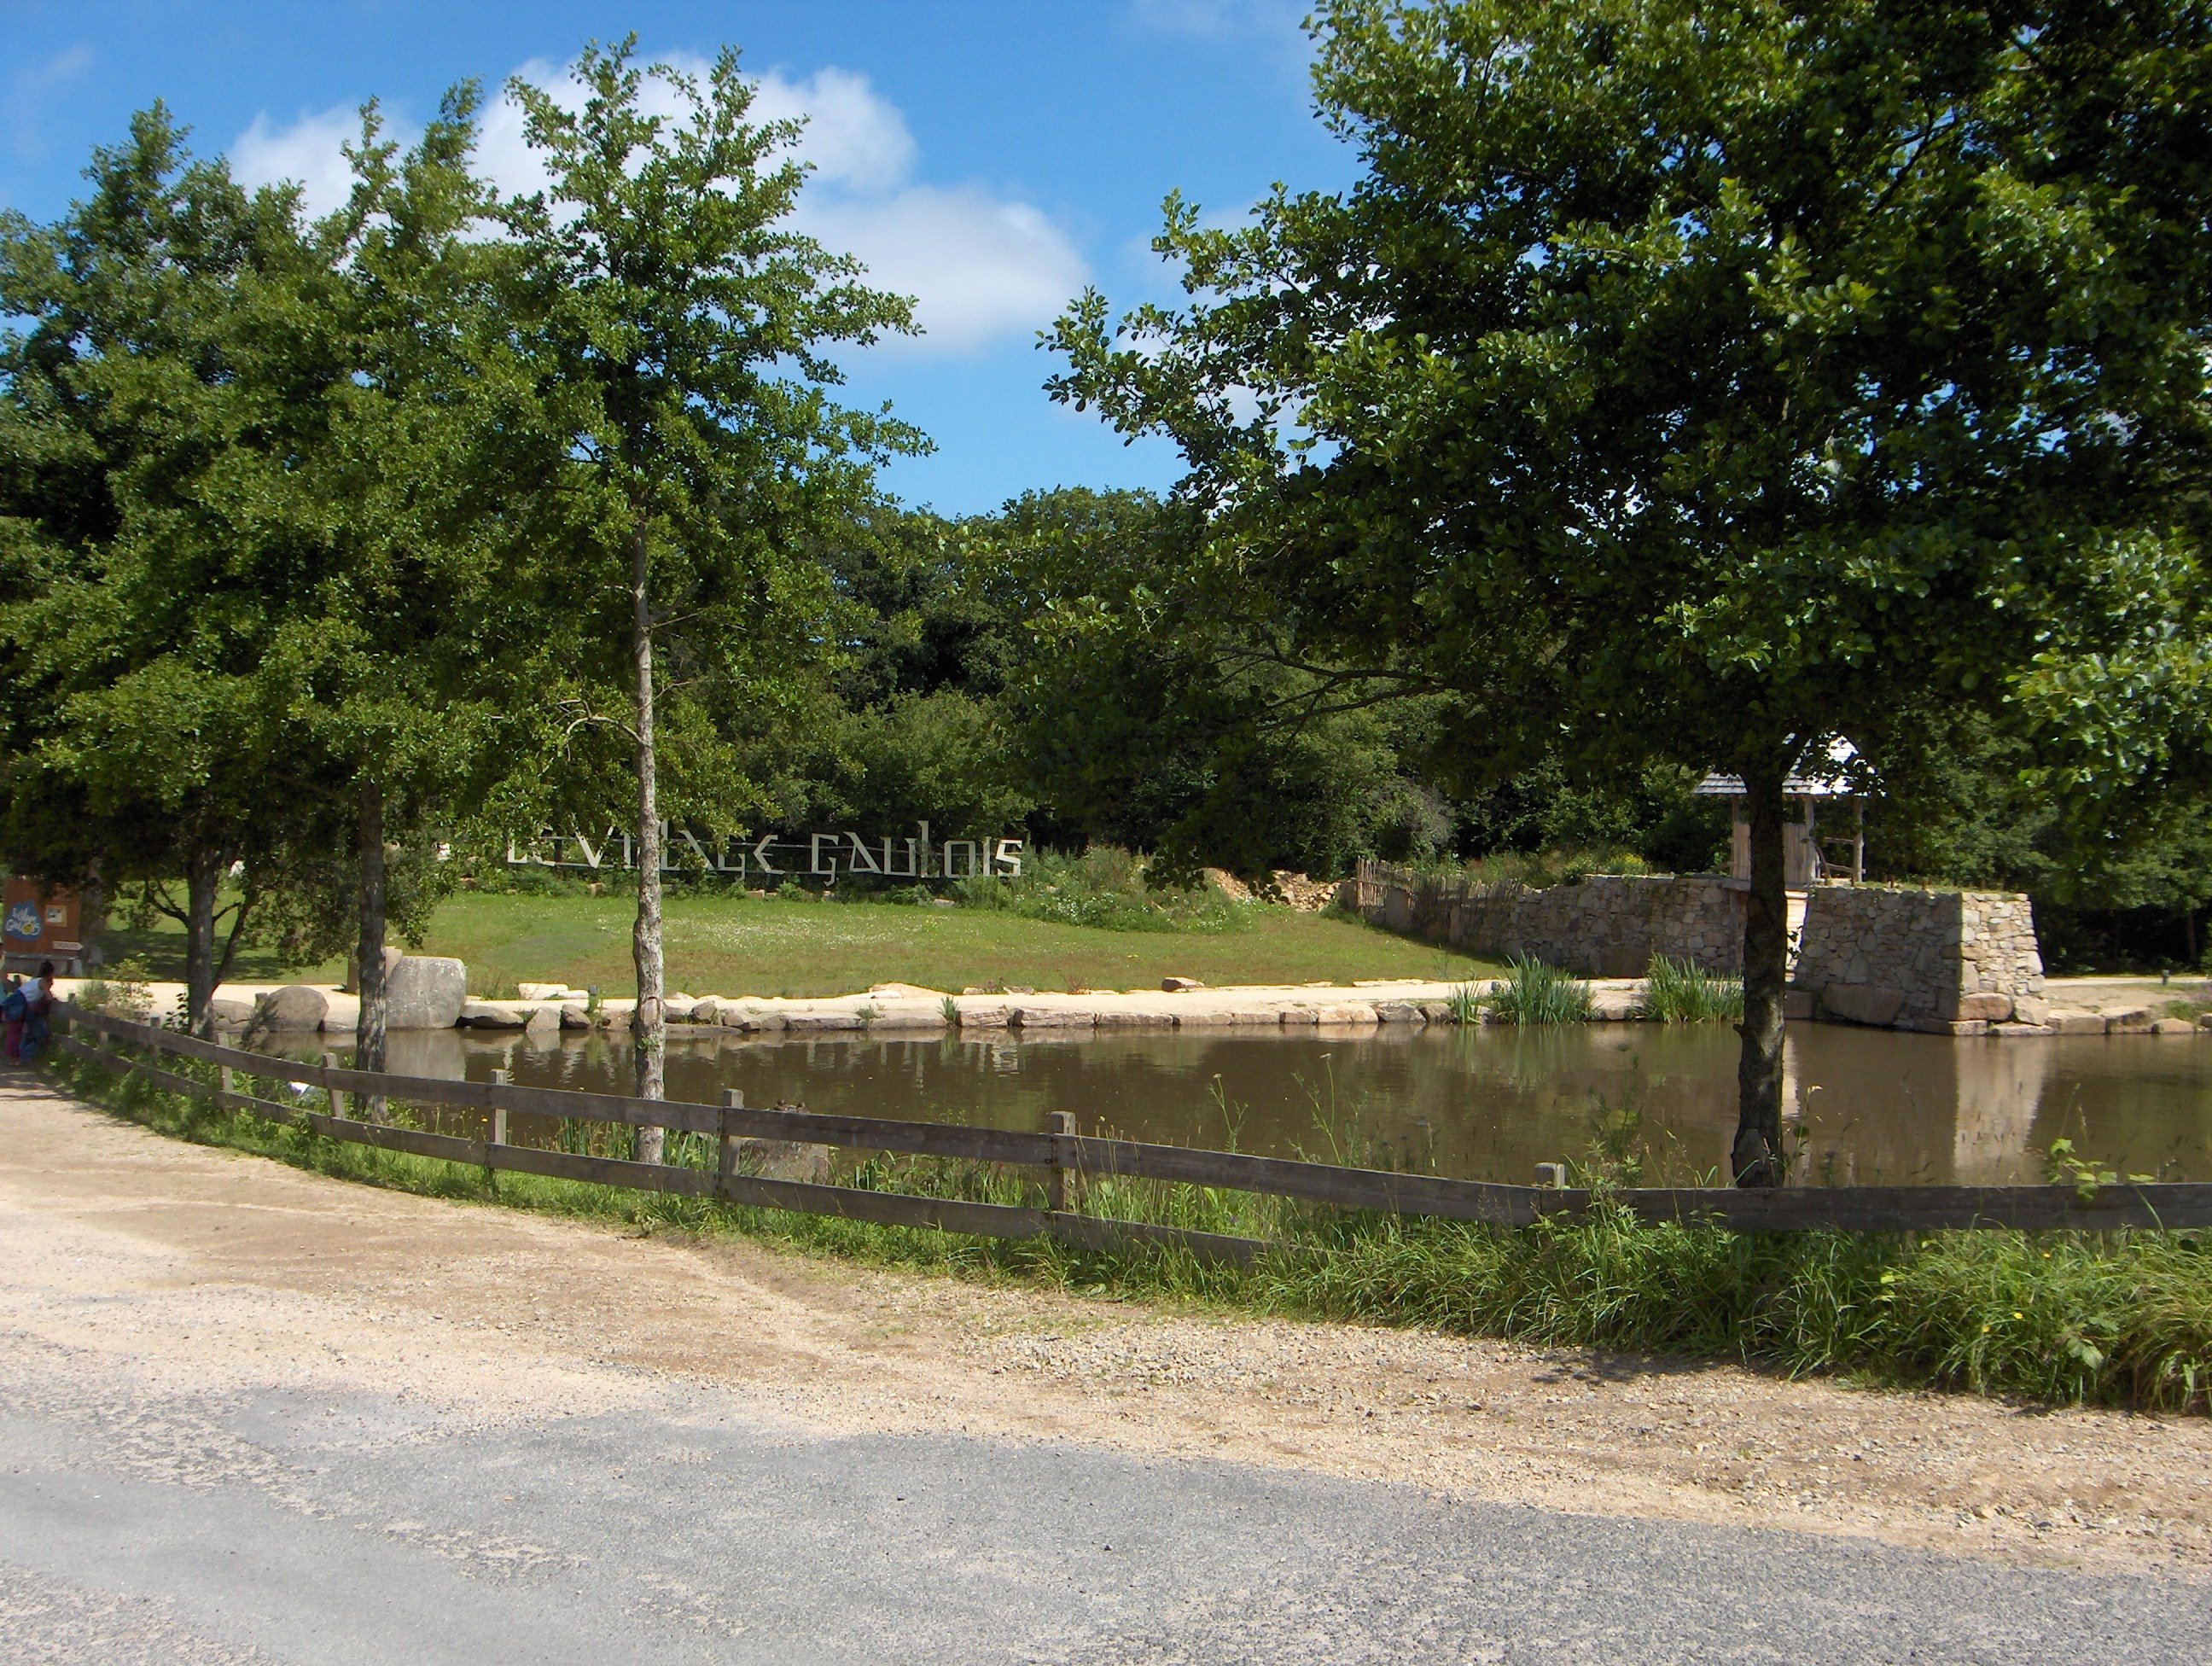 Une allée bordée d'arbres devant un étang. De l'autre côté de celui-ci, des lettres géantes disposées verticalement forment les mots "Le Village gaulois"